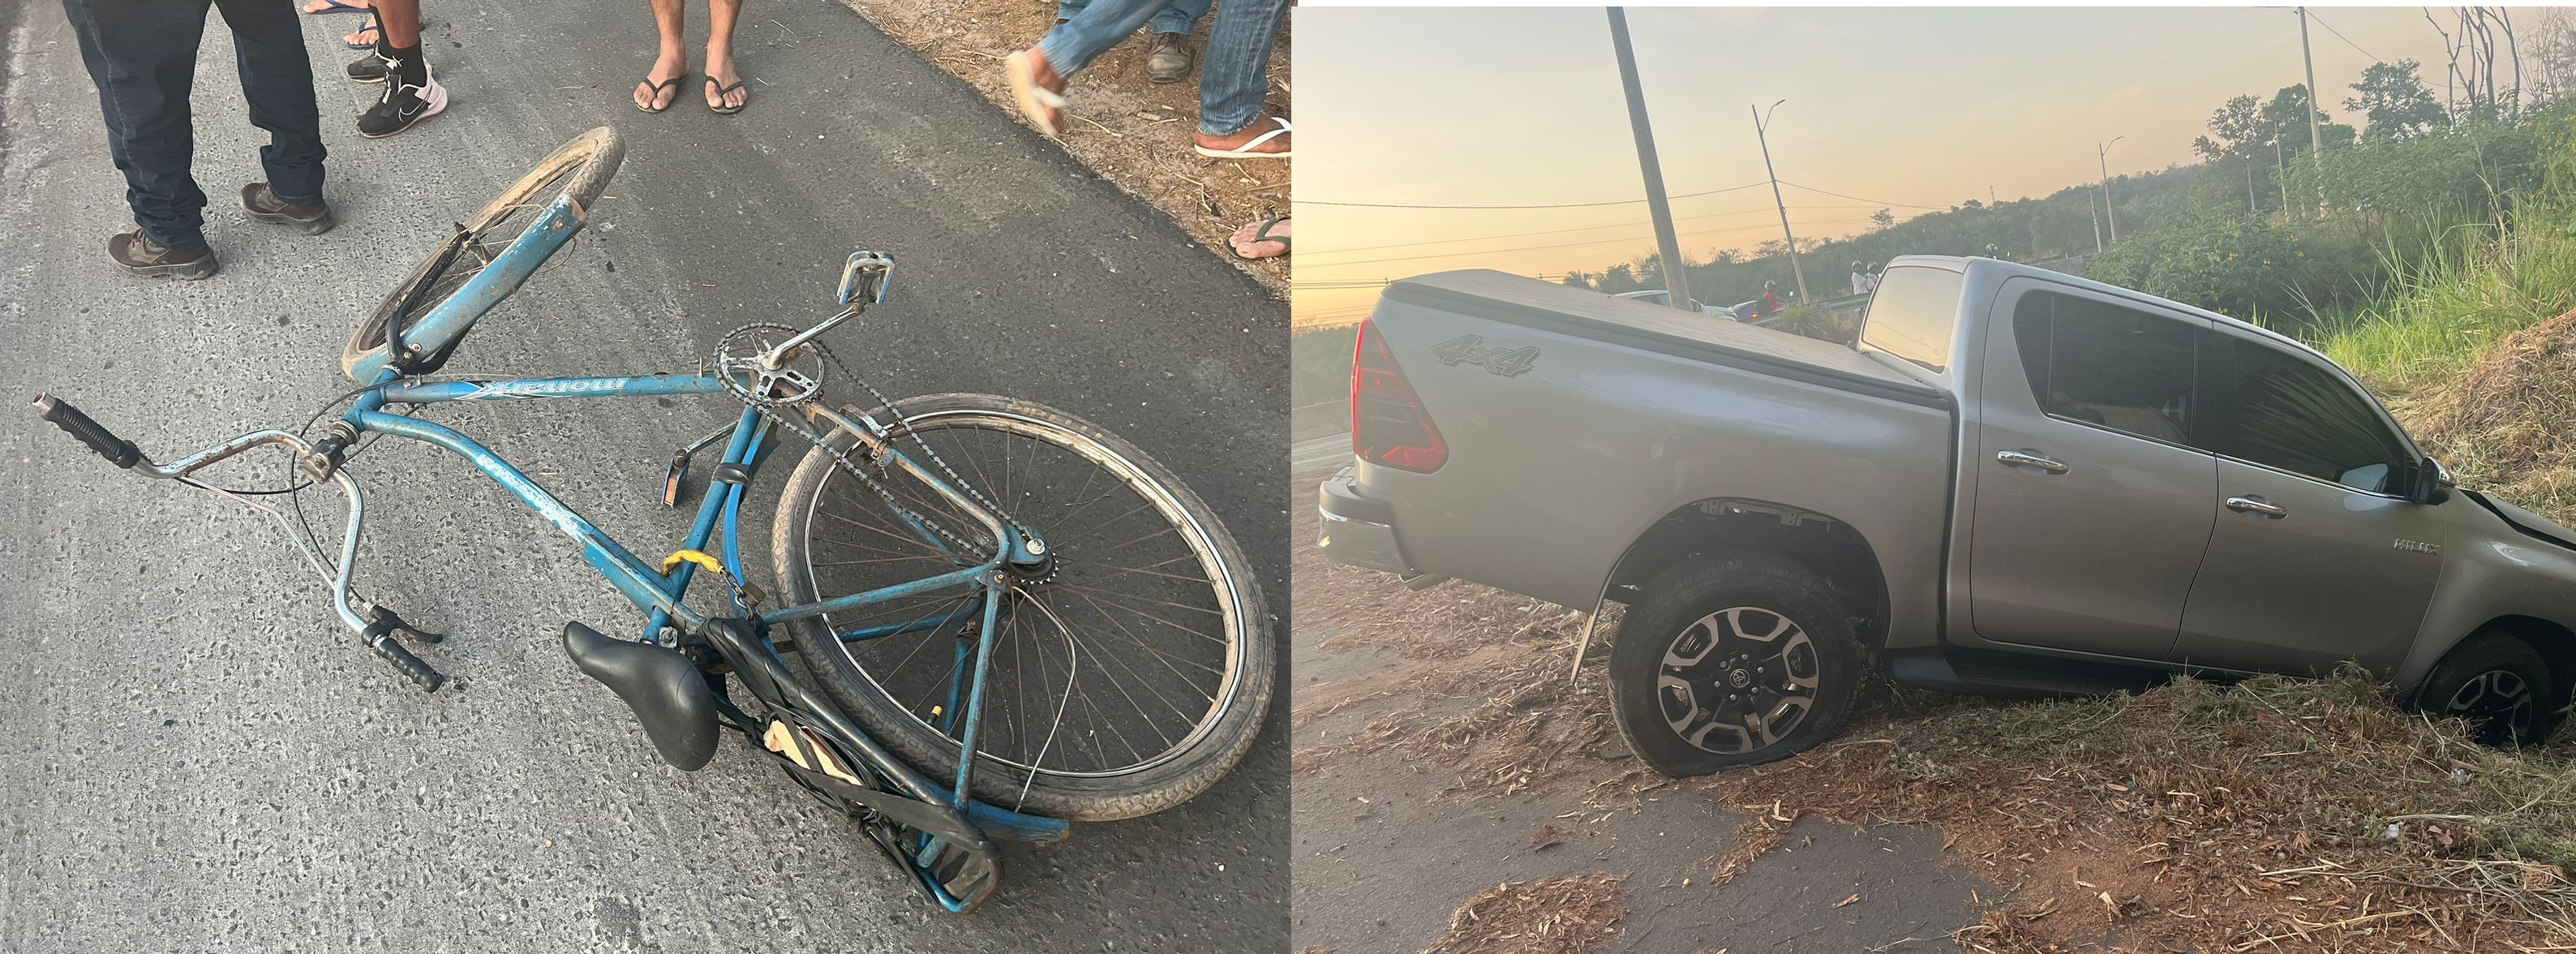 Bicicleta e carro envolvidos no acidente